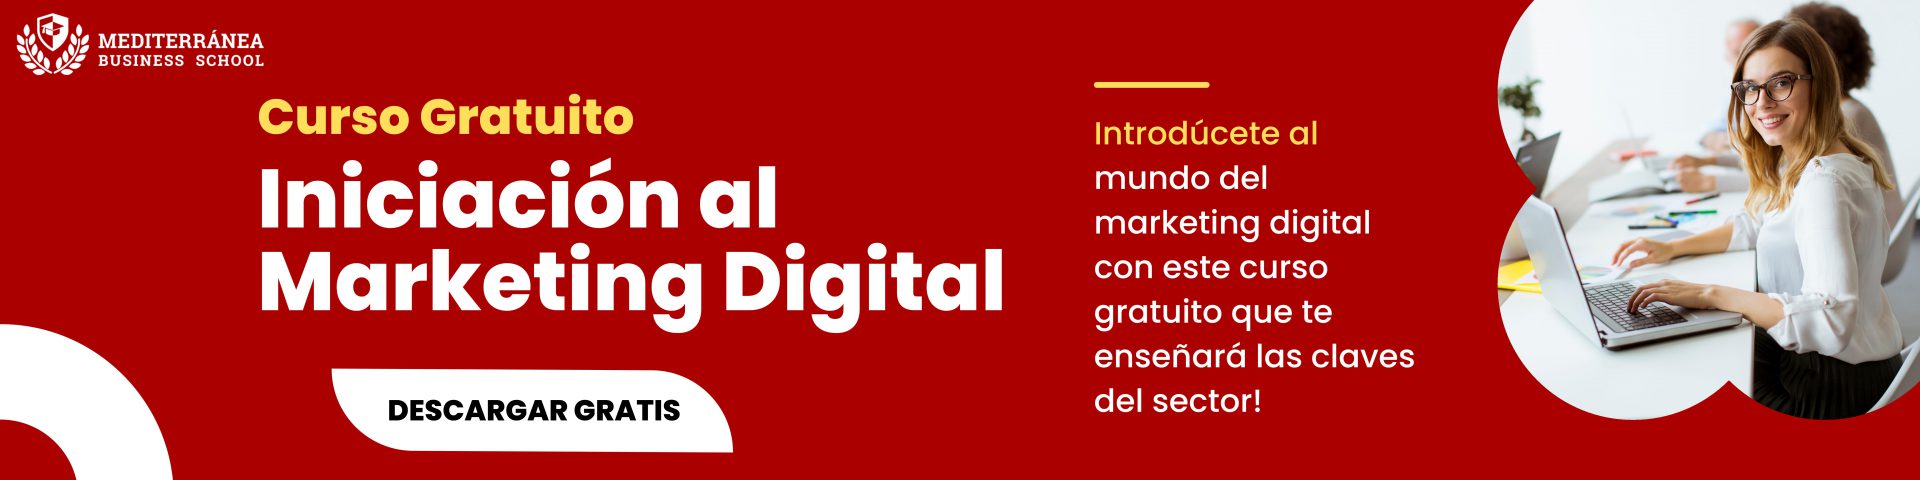 banner curso gratuito marketing digital